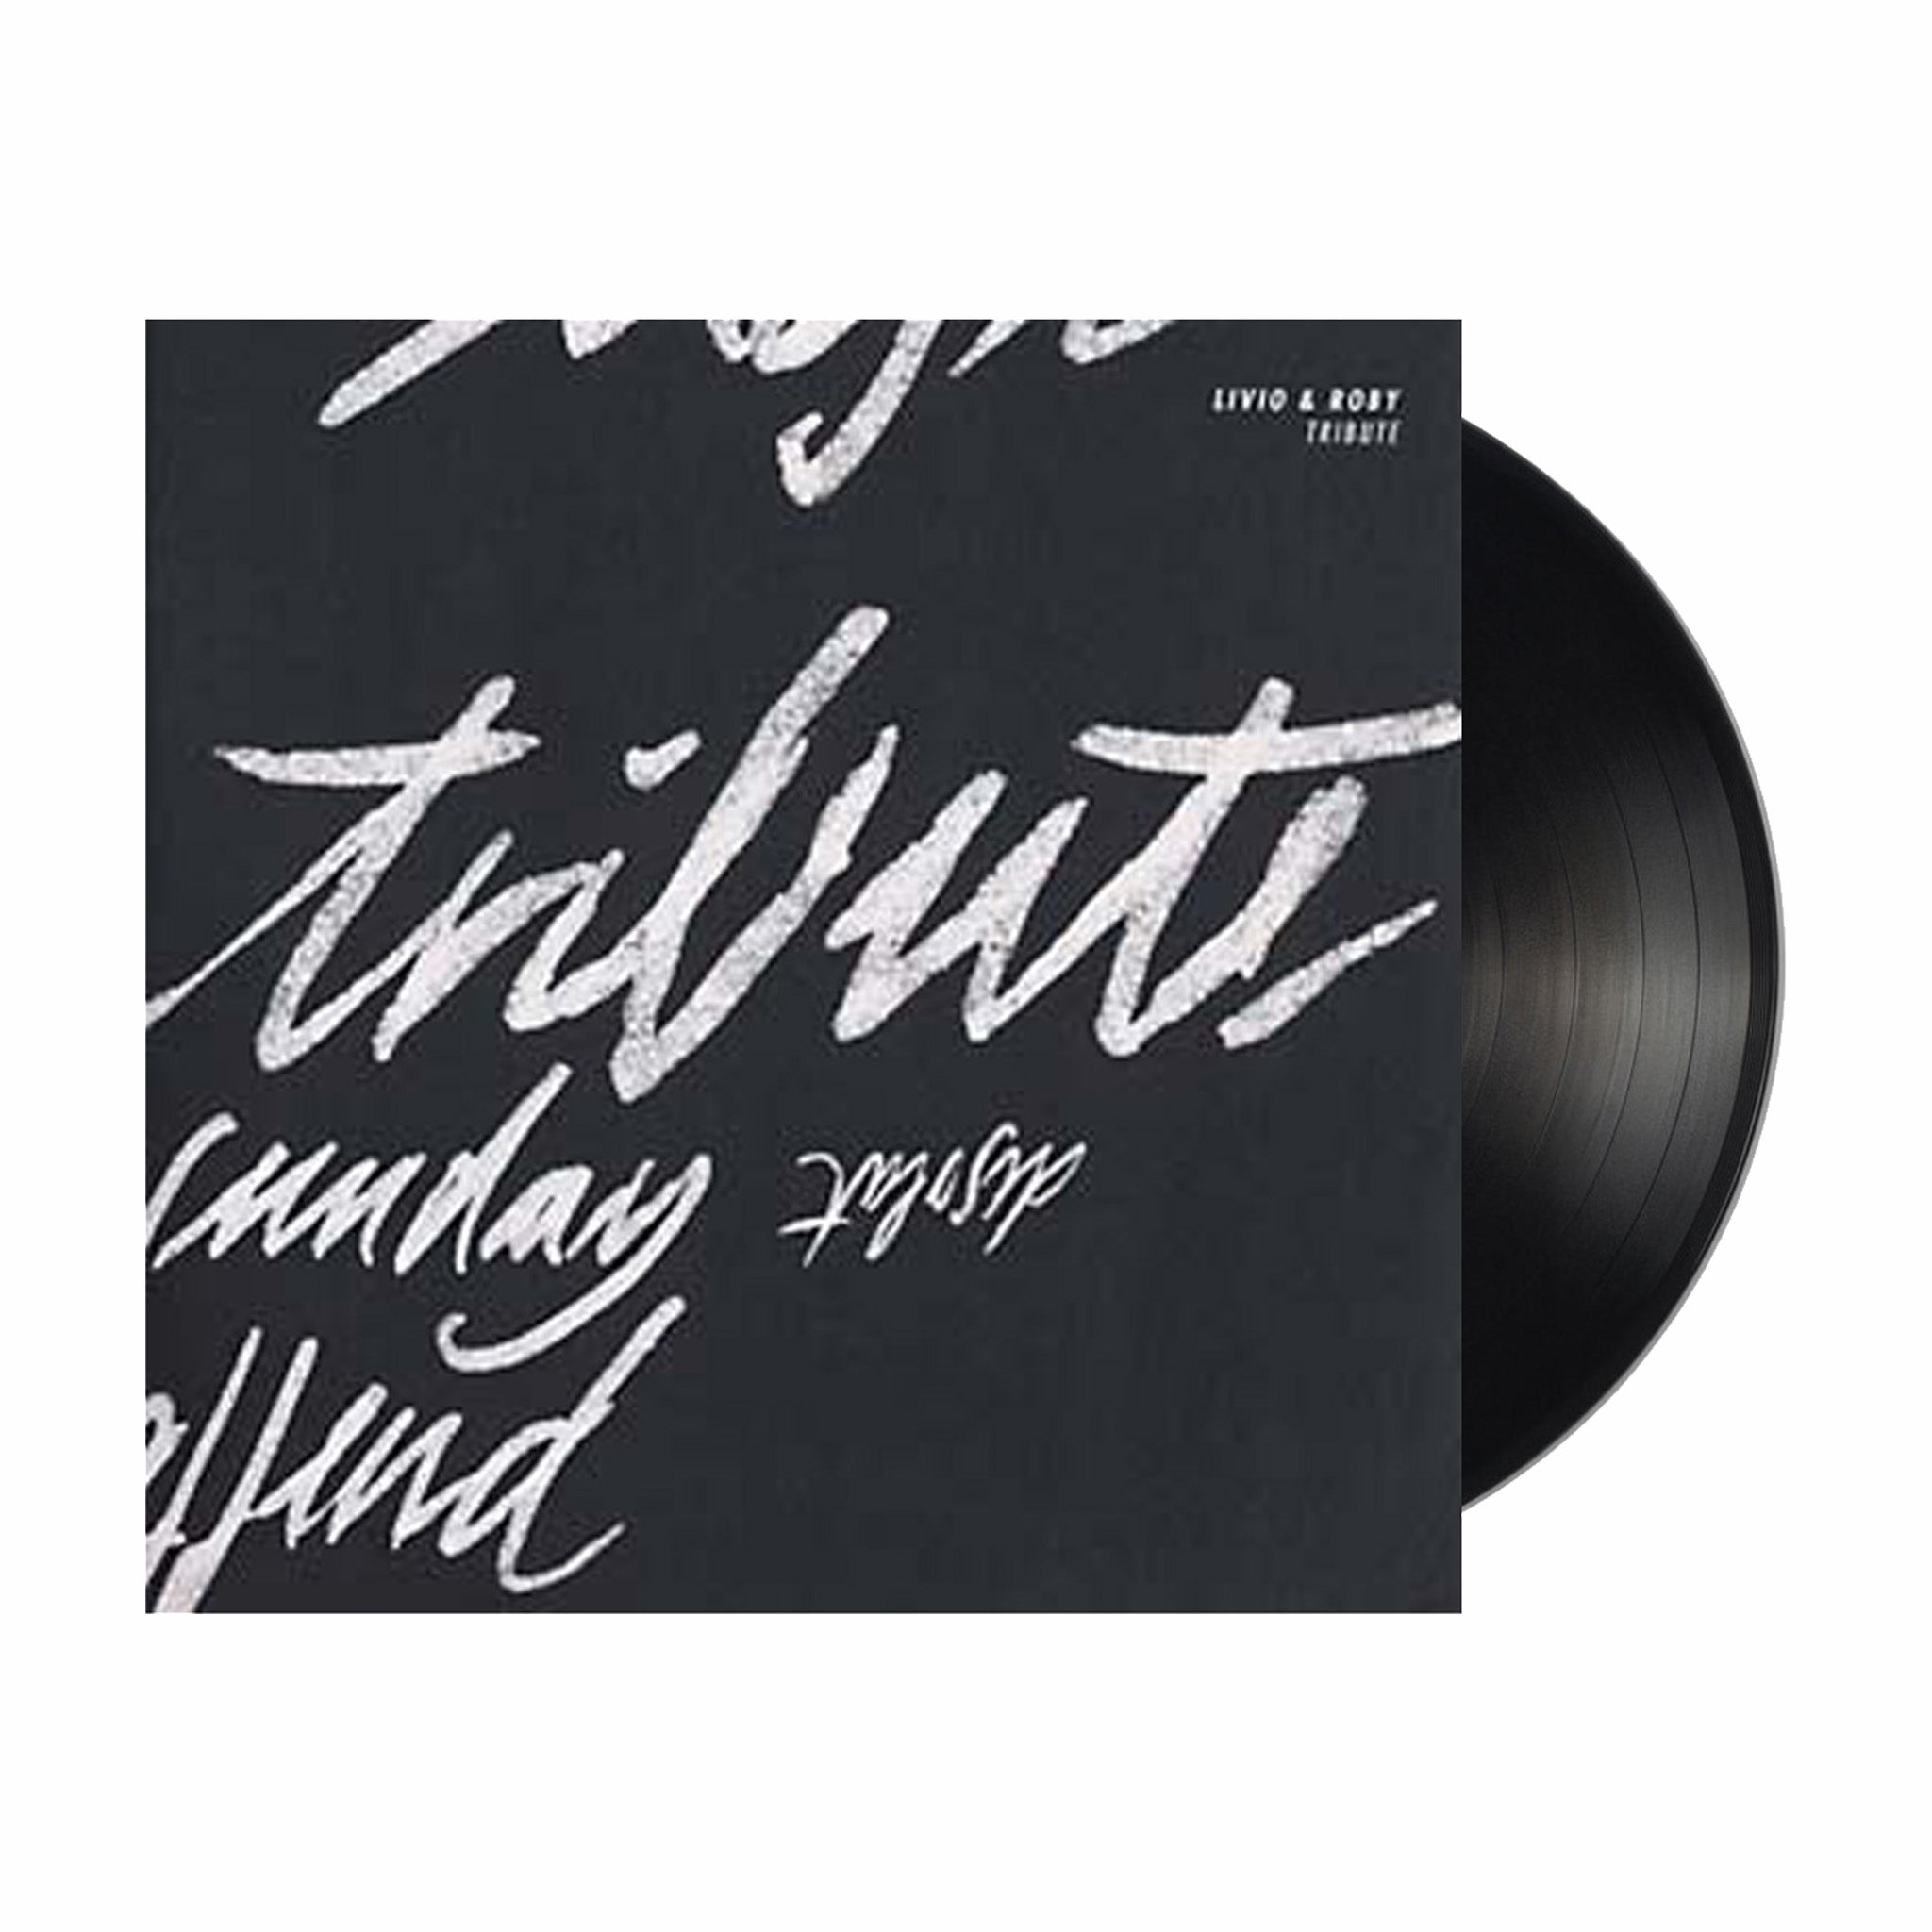 Vinile, Livio & Roby "Tribute" 12" EP